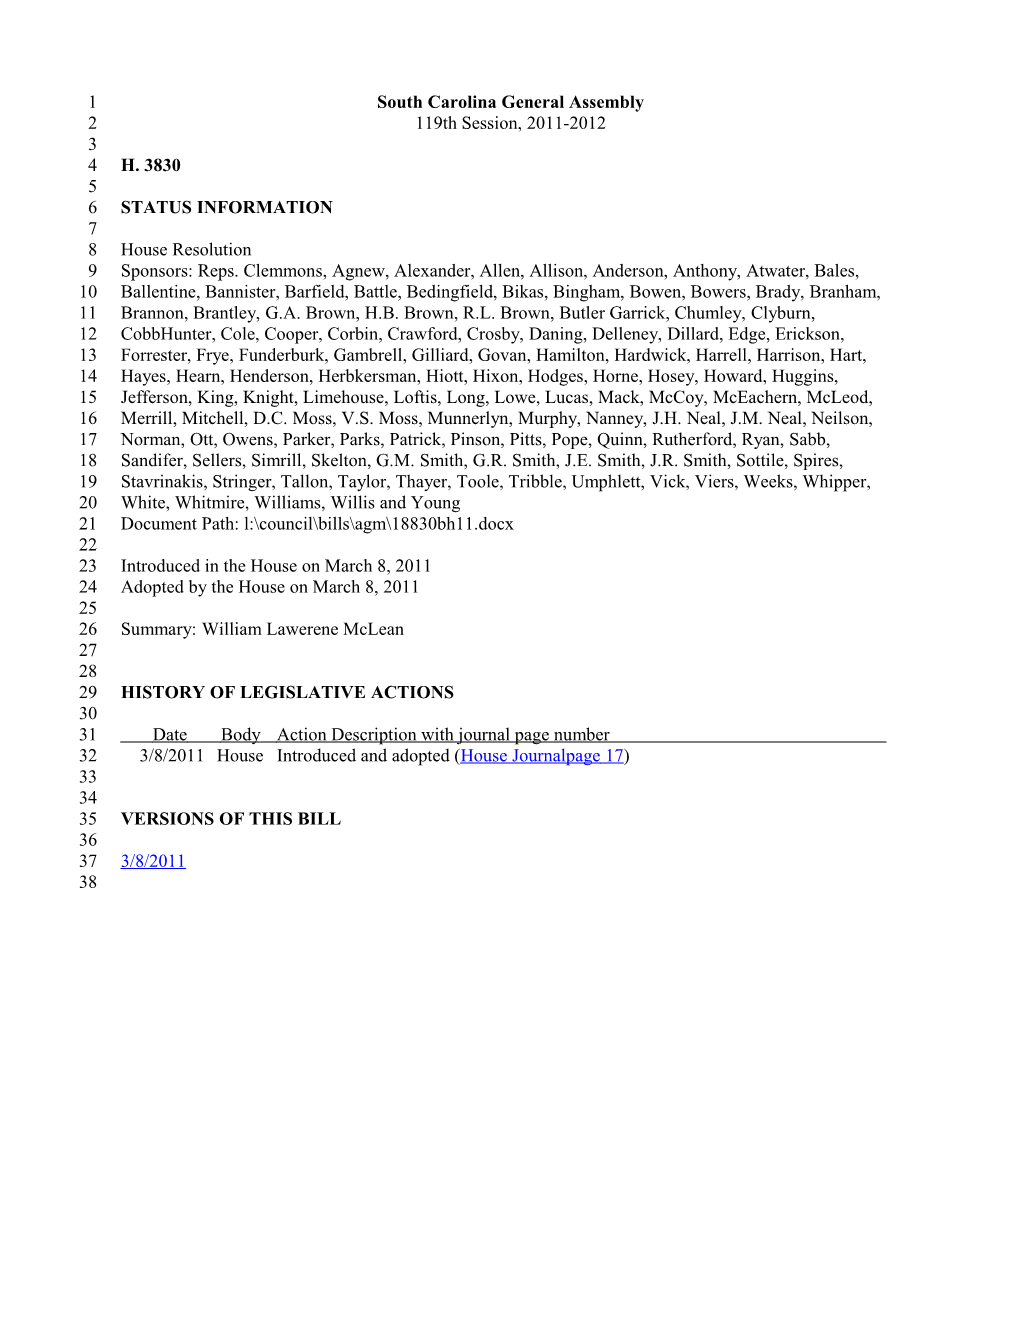 2011-2012 Bill 3830: William Lawerene Mclean - South Carolina Legislature Online